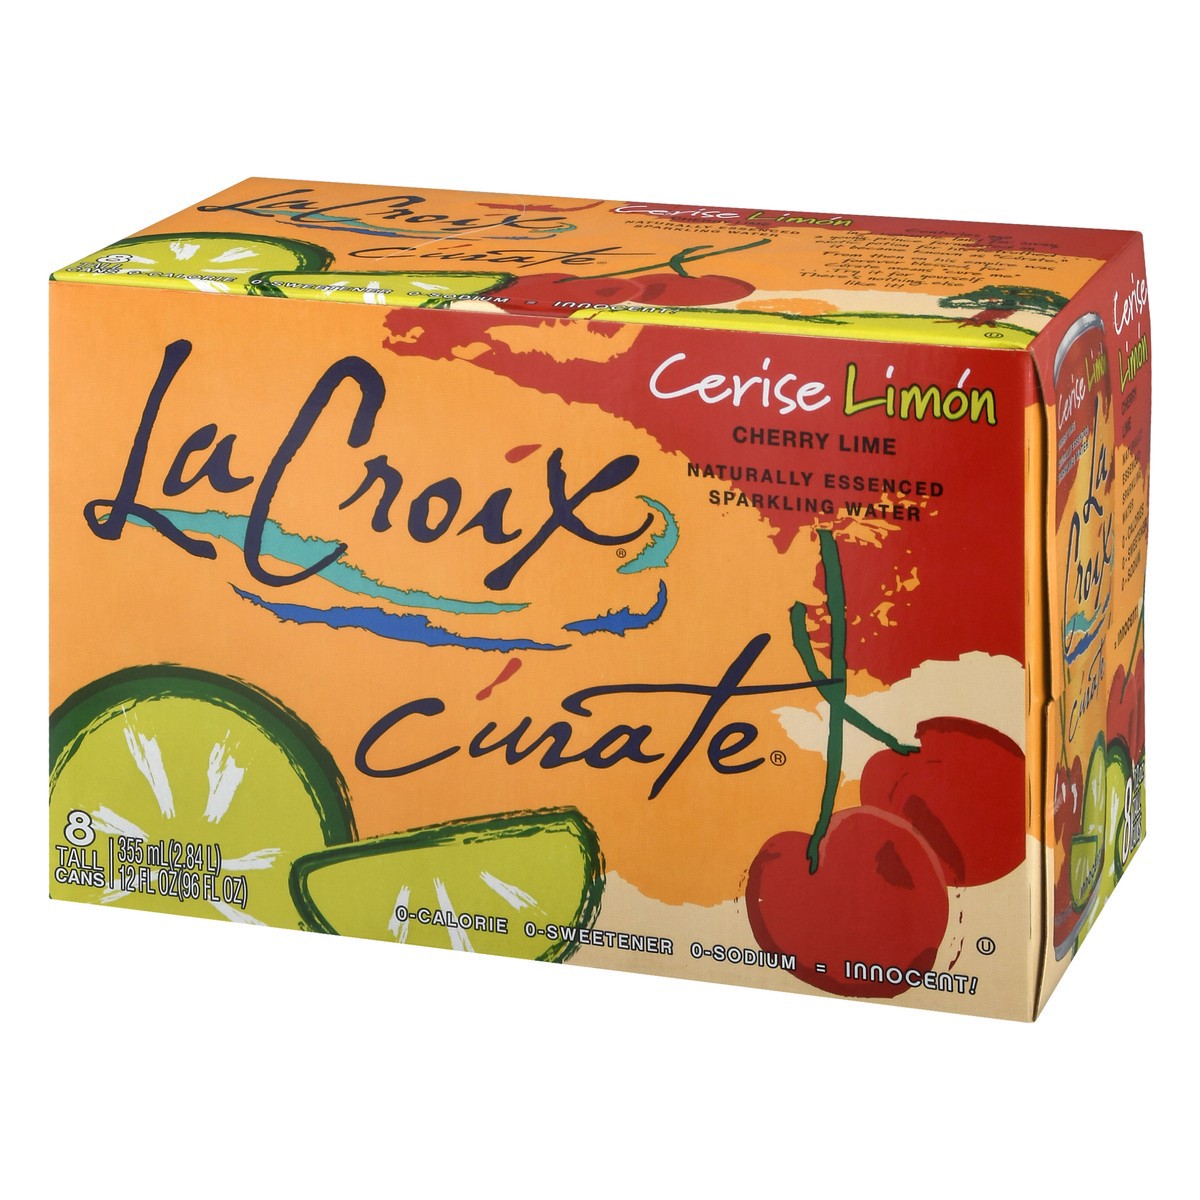 slide 8 of 17, La Croix Cherry Lime Sparkling Water 8 cans 12 fl oz ea, 8 ct